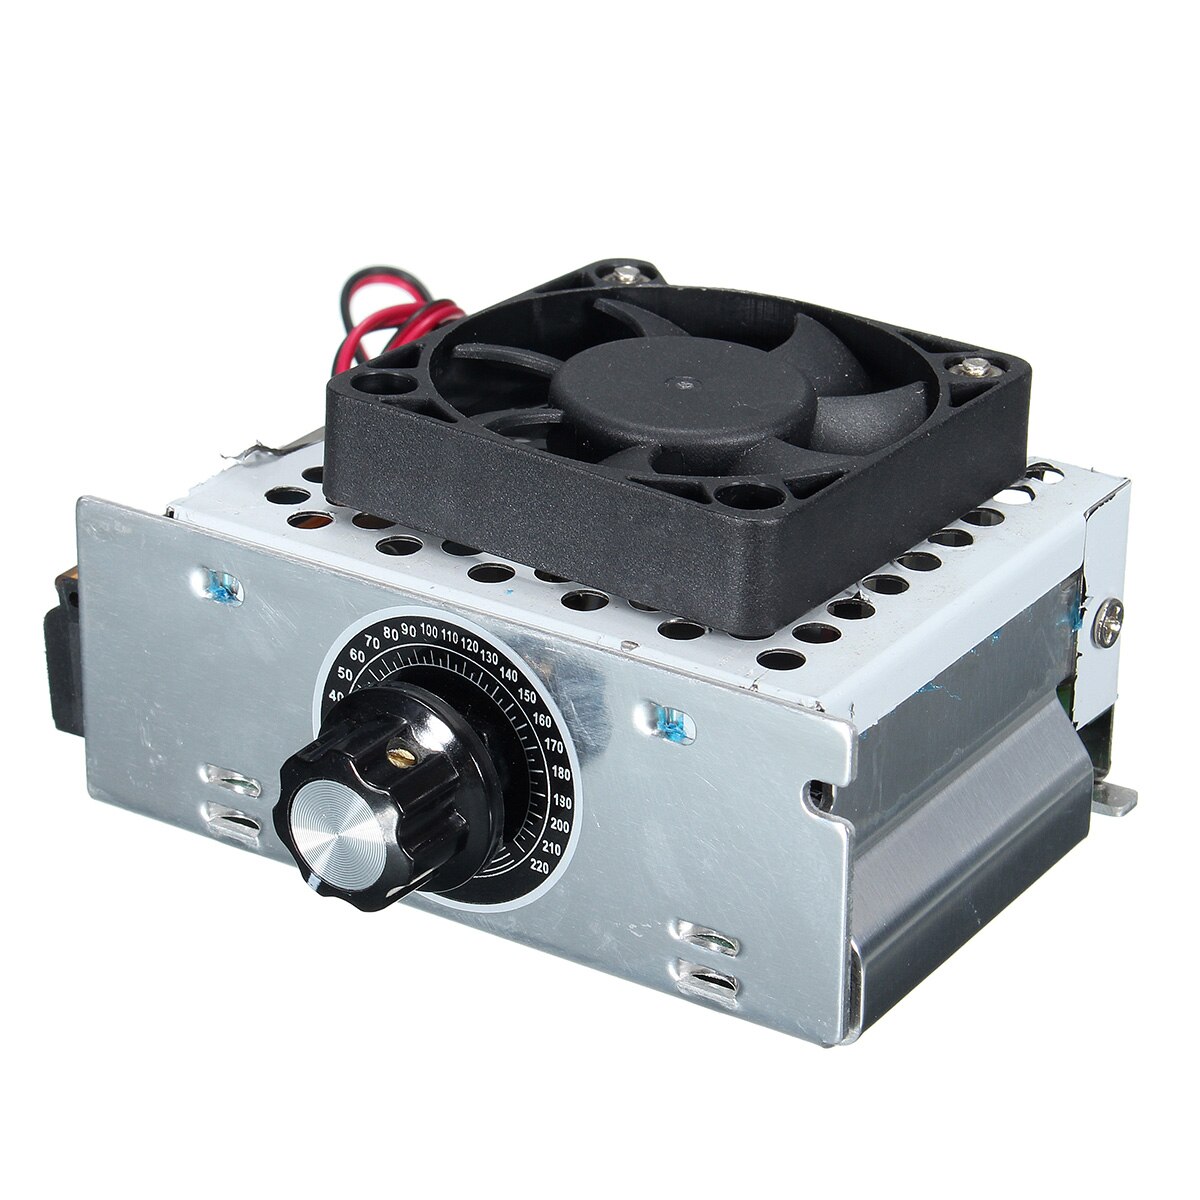 Ac elektrisk regulator motorhastighedsregulator 220v 4000w scr temperatur spændingsregulator med ventilator stor effekt lysstyrke lysdæmper